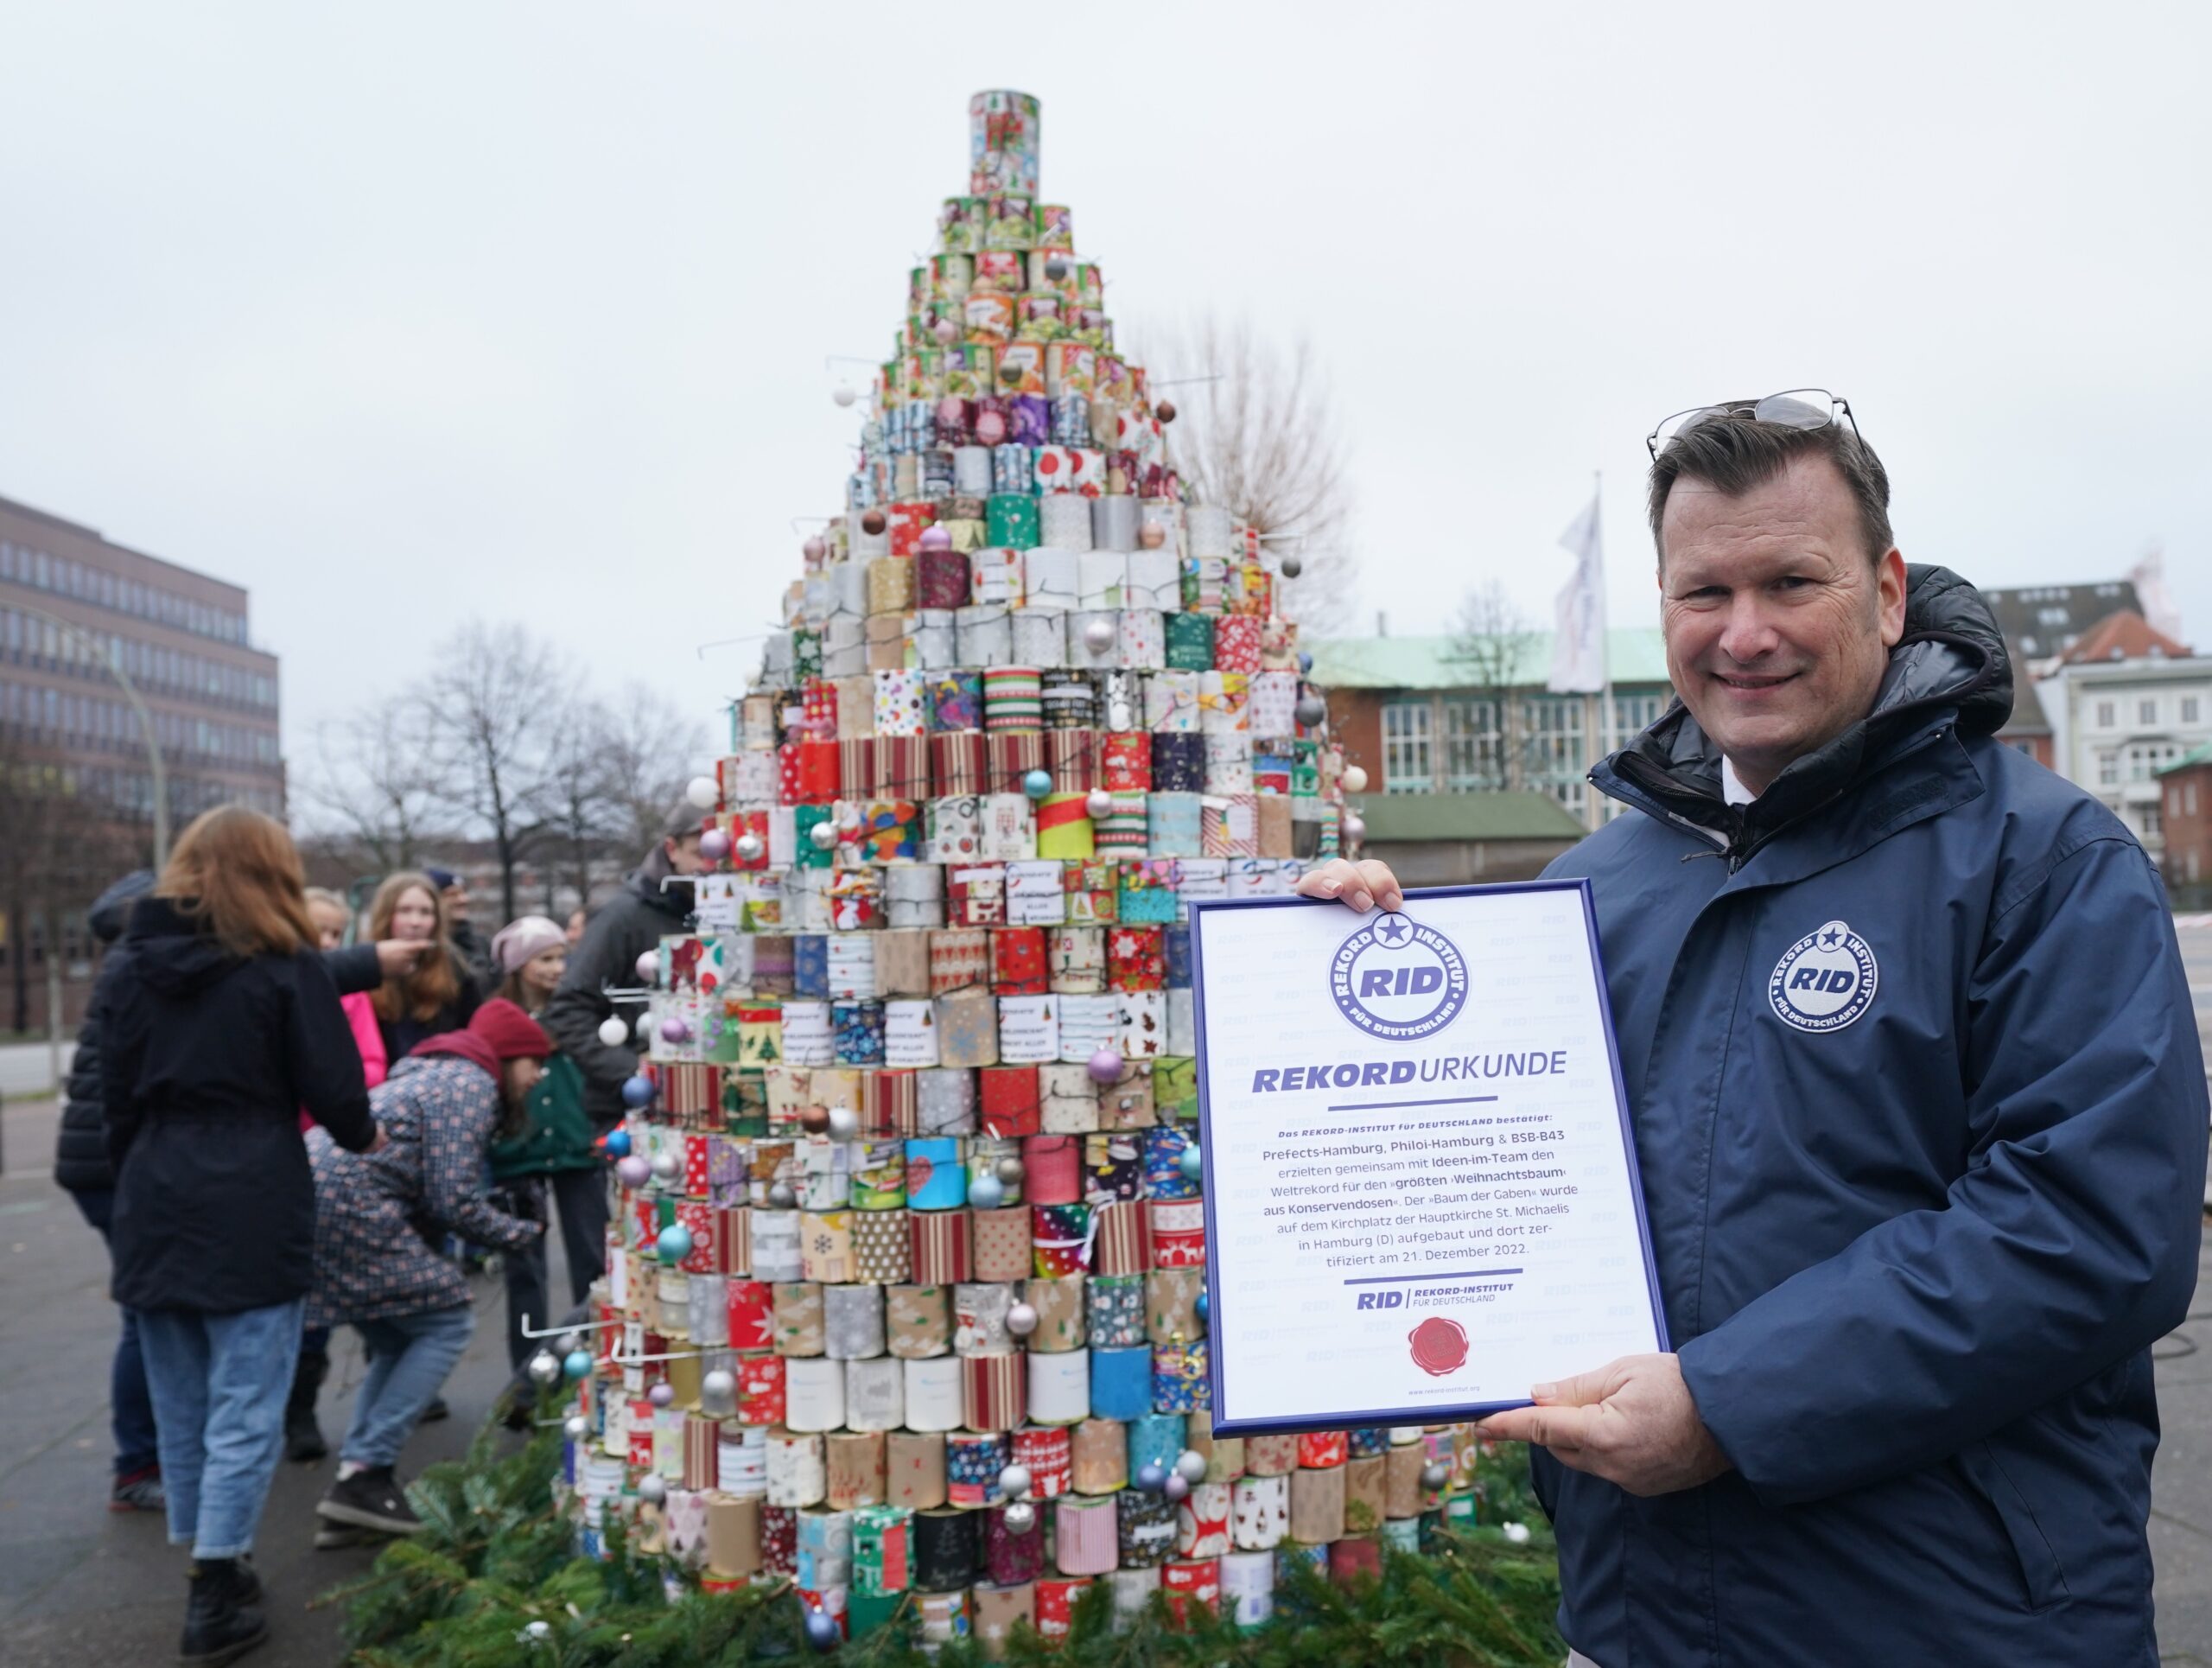 RID-Rekordrichter Olaf Kuchenbecker hält die Urkunde vor den größten Weihnachtsbaum aus Konservendosen auf dem Kirchplatz vor dem Michel.